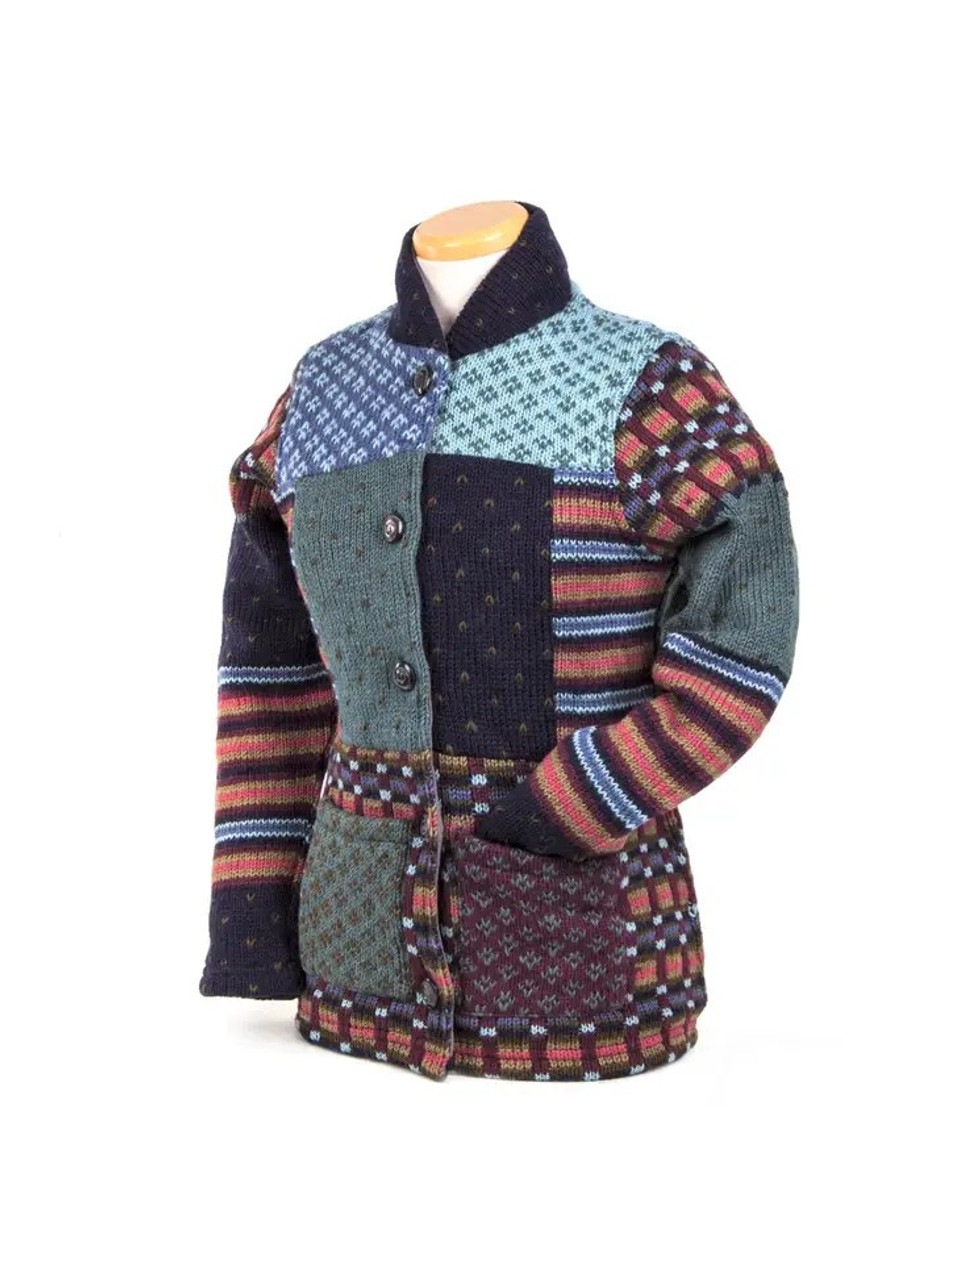 Macy - Women's Wool Knit Sweater